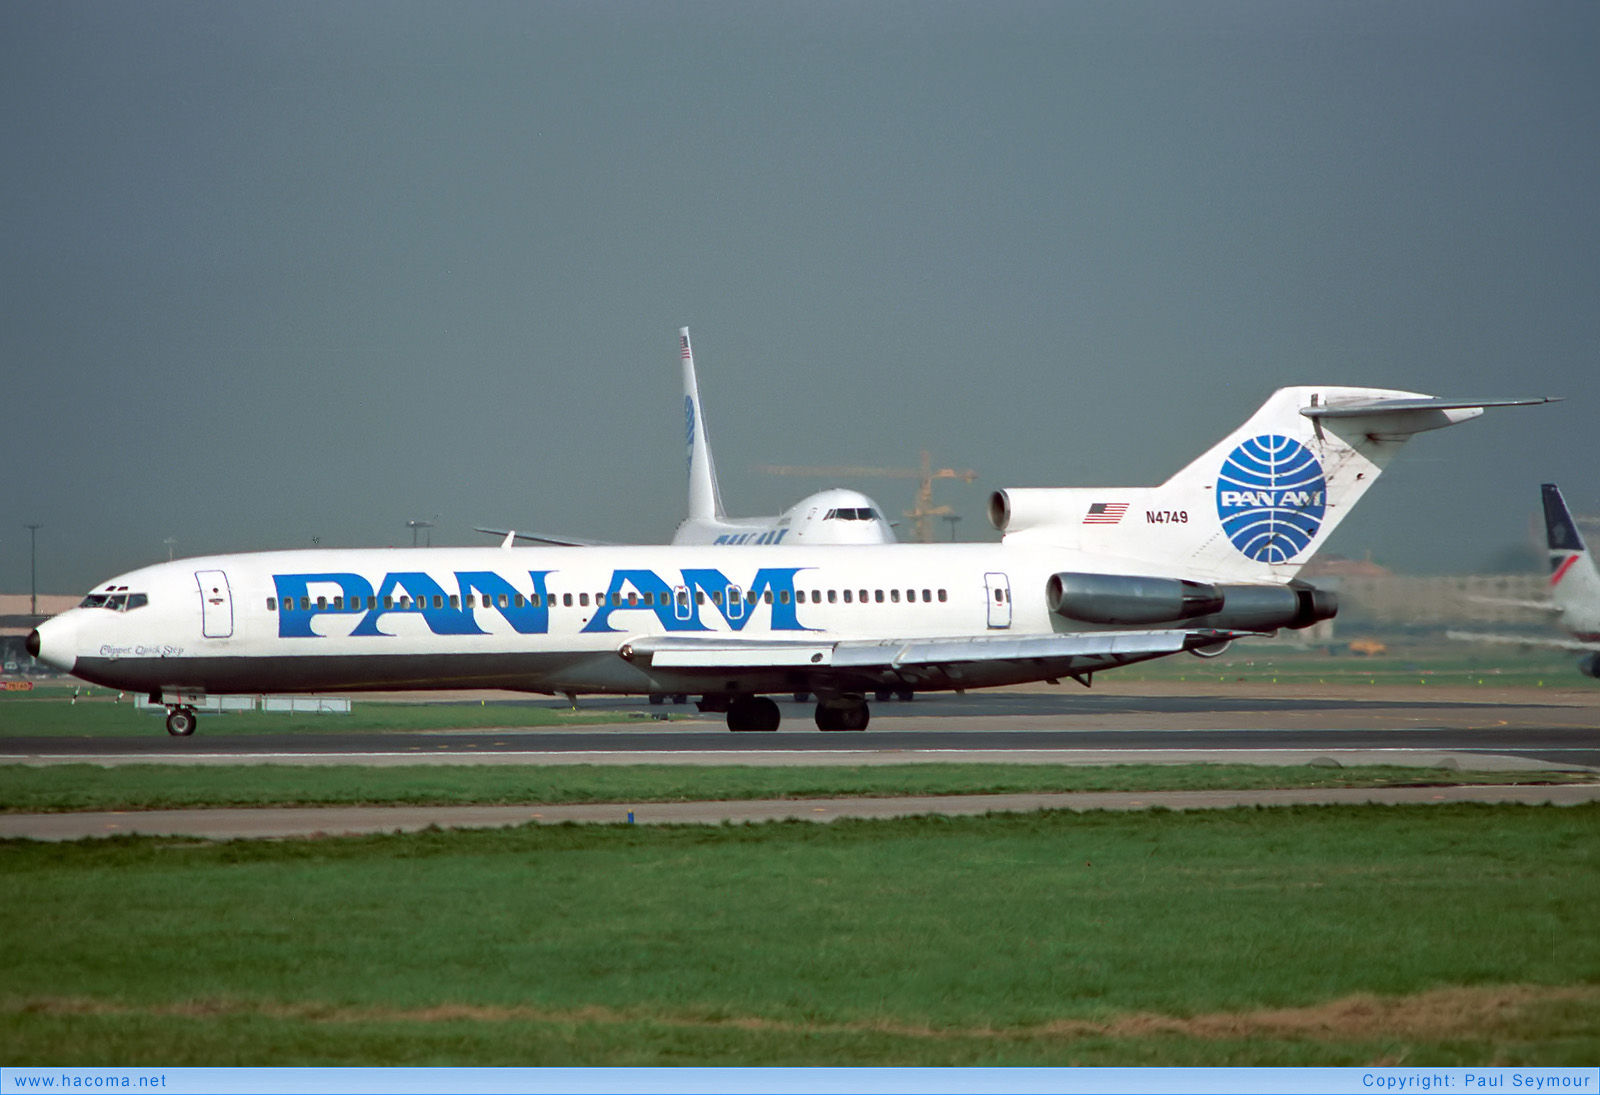 Photo of N4749 - Pan Am Clipper Quickstep - London Heathrow Airport - Mar 17, 1990